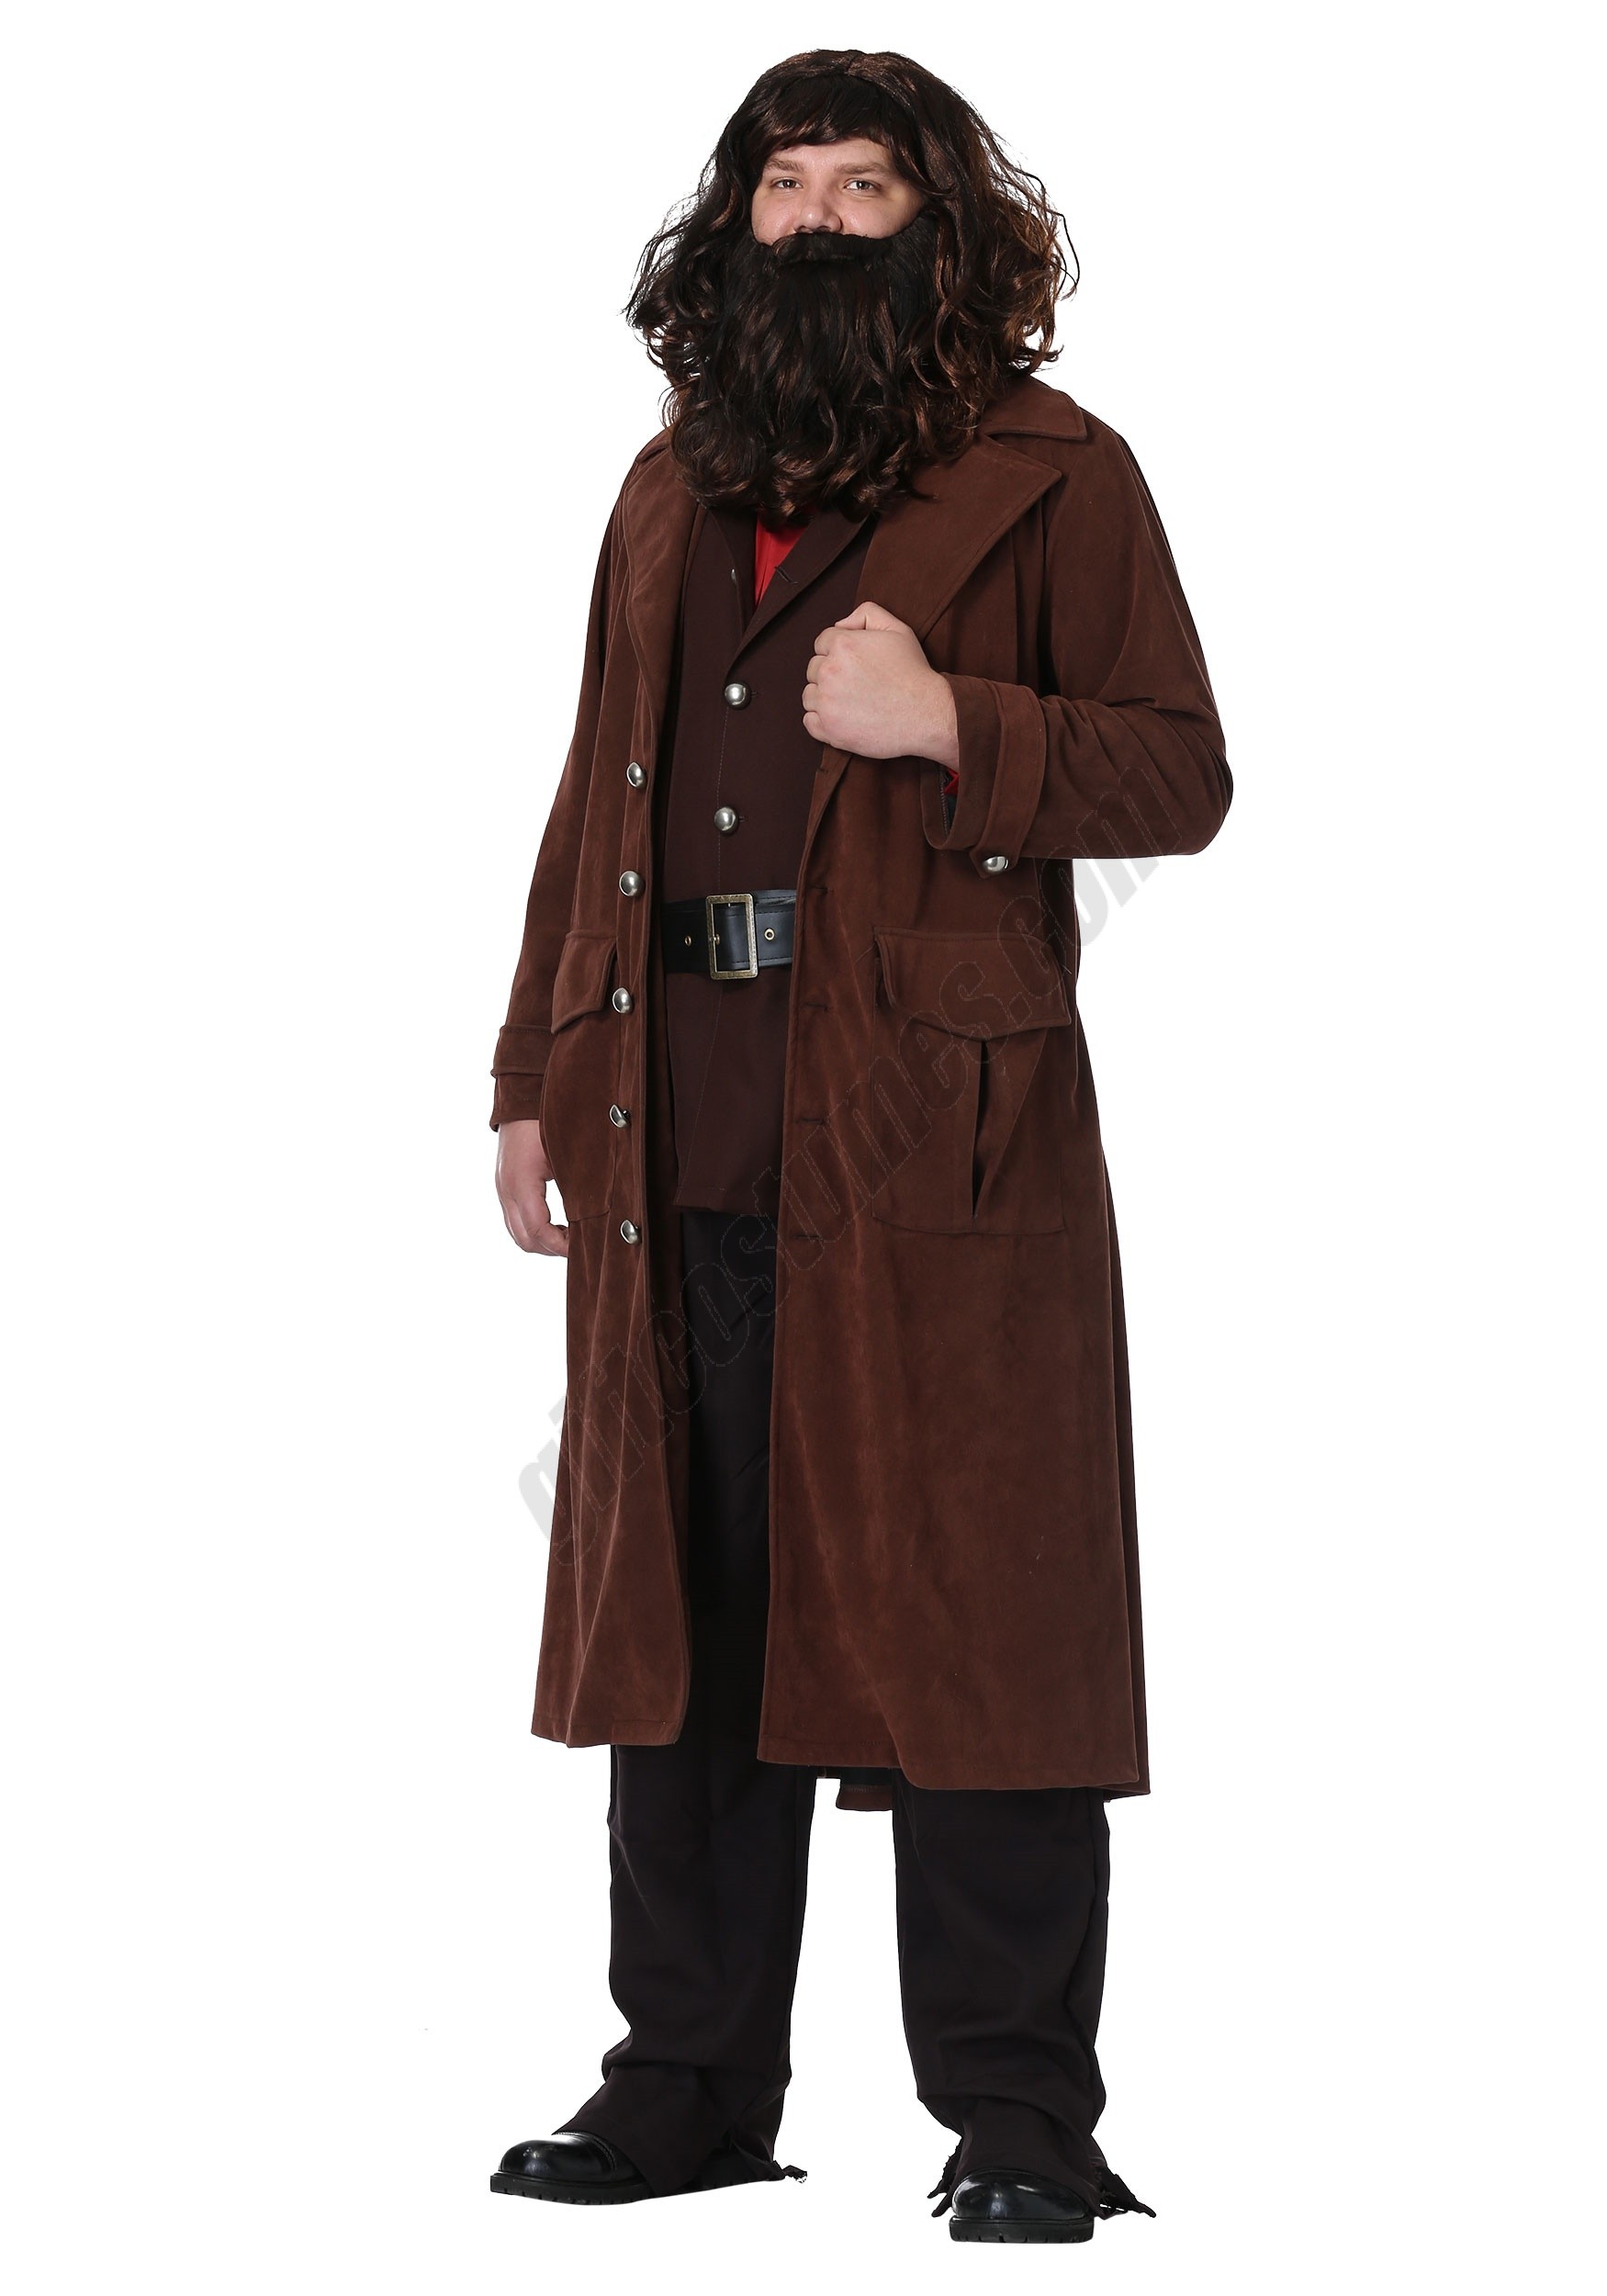 Harry Potter Deluxe Hagrid Plus Size Men's Costume Promotions - Harry Potter Deluxe Hagrid Plus Size Men's Costume Promotions